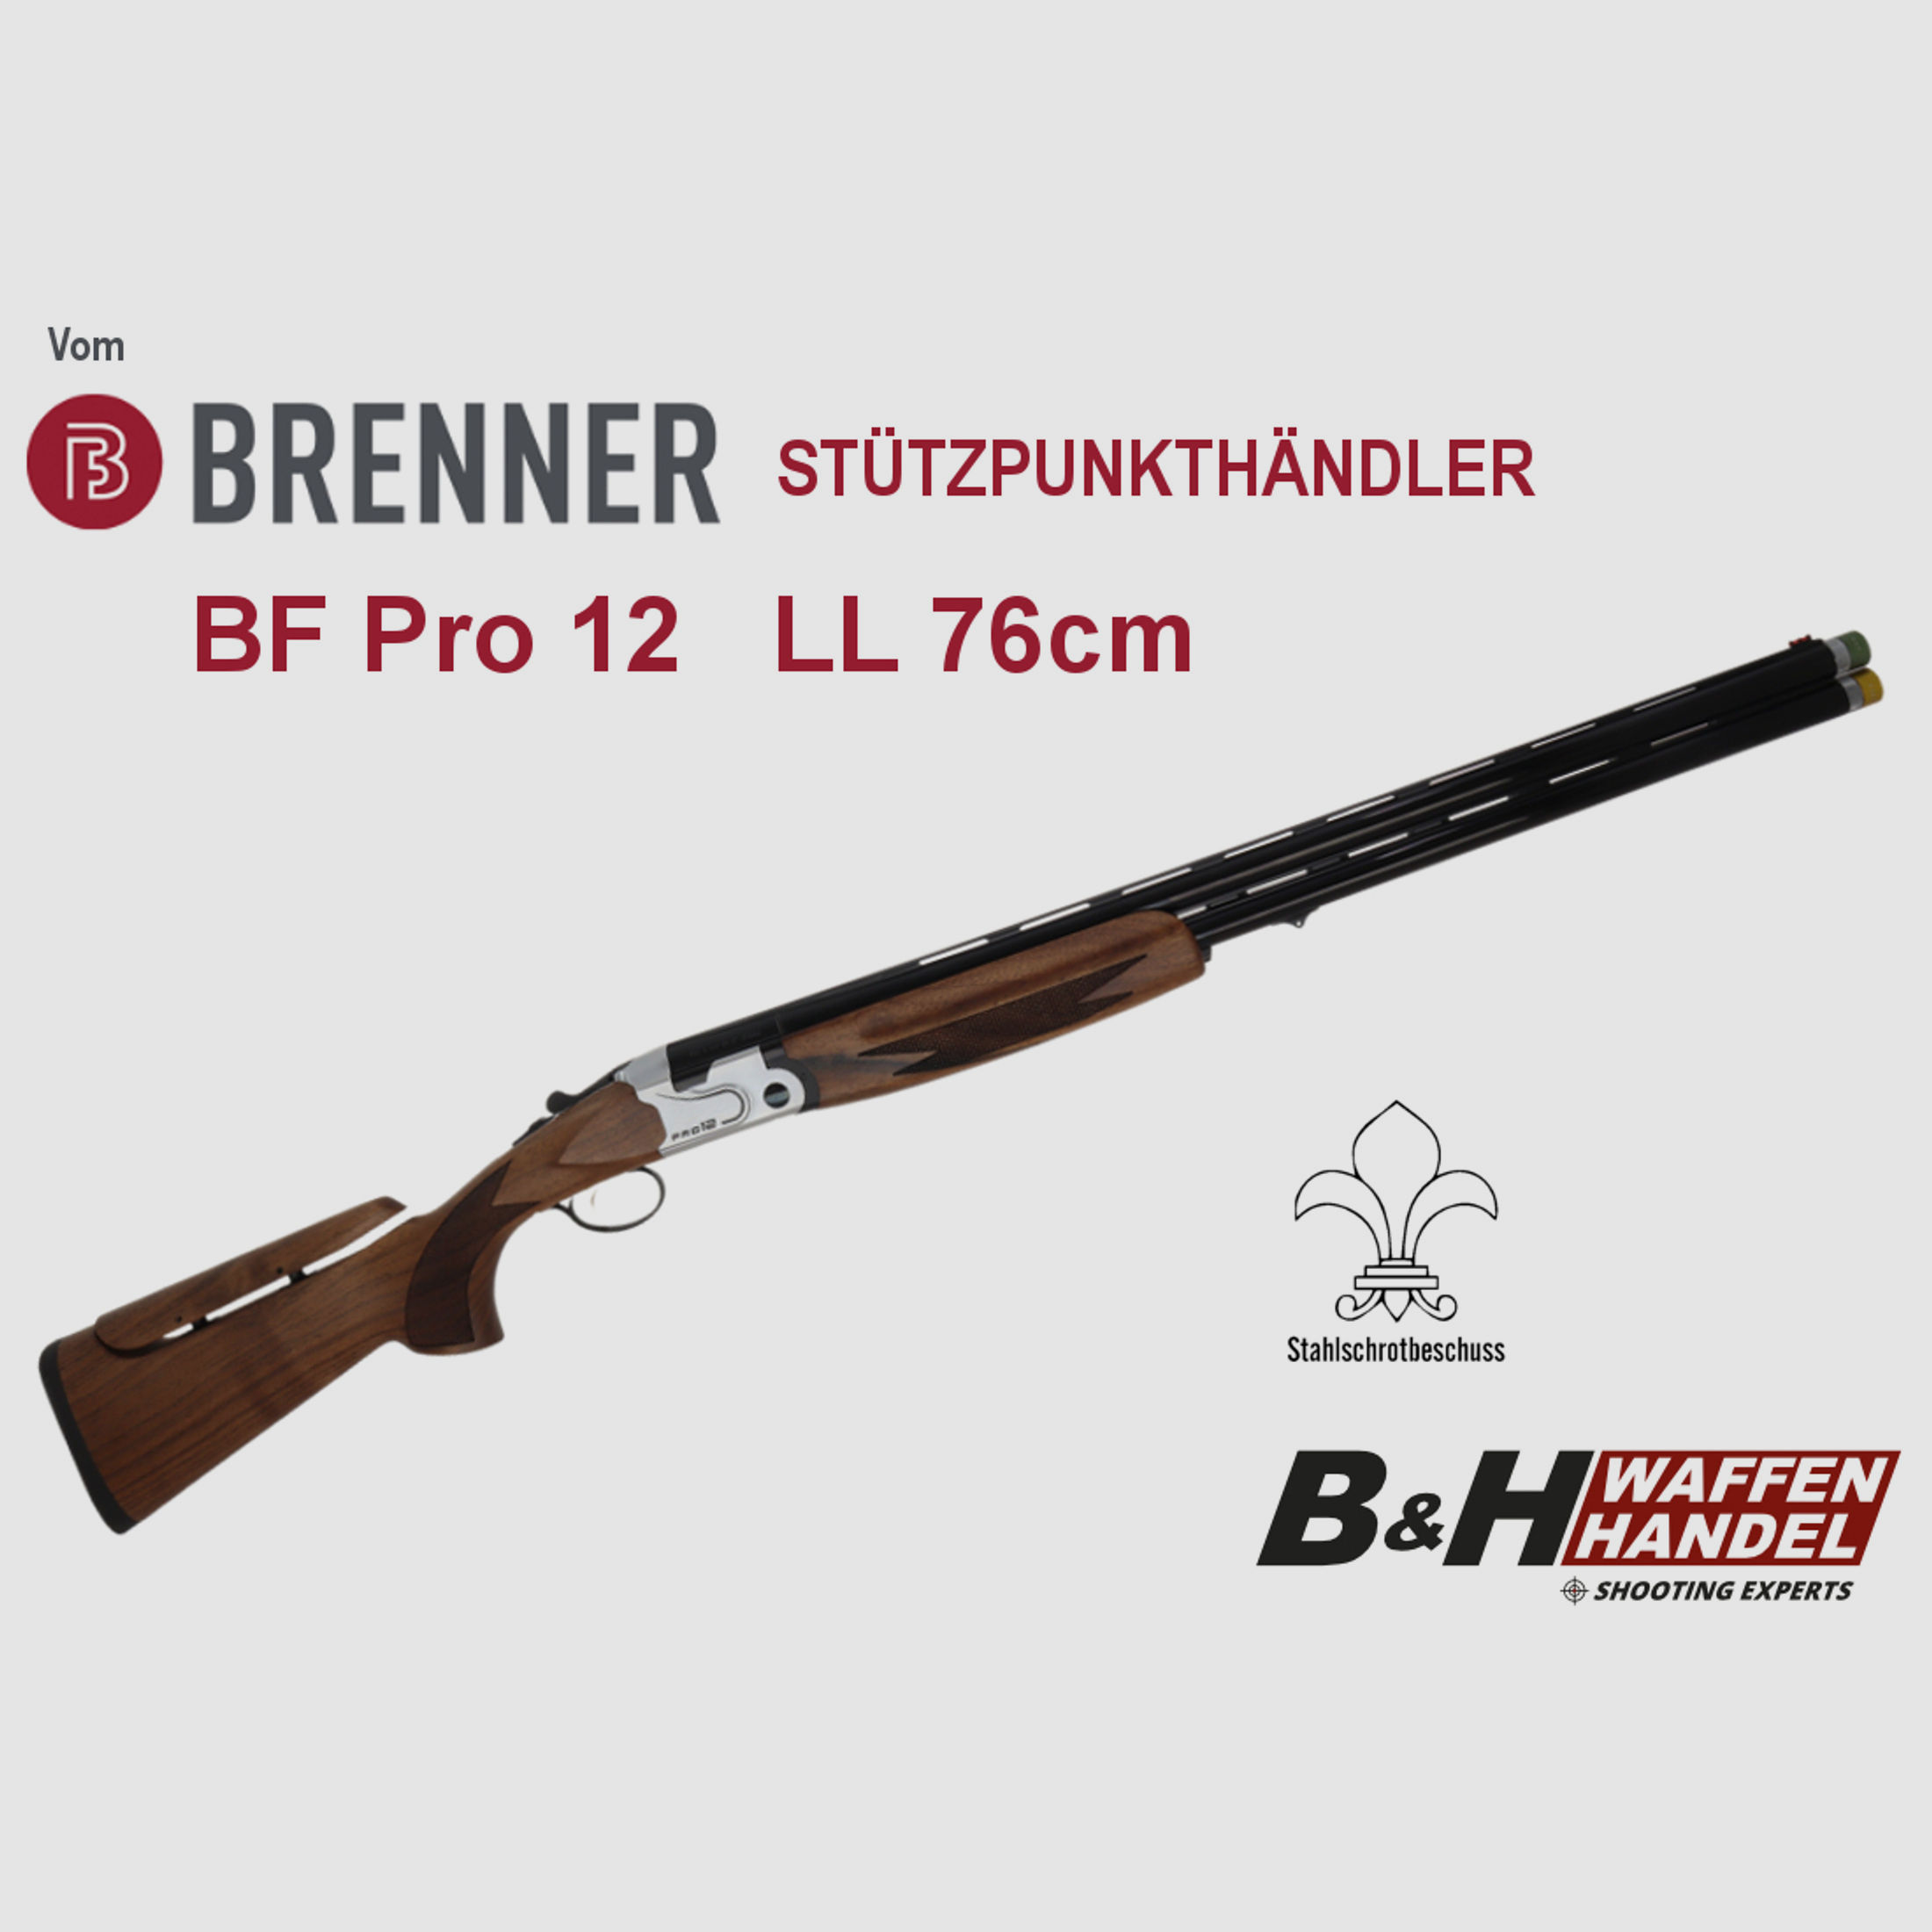 Brenner BF Pro 12 Bockdoppelflinte LL 76cm Stahlschrotbeschuss Bockflinte (vgl. BF18 / BF20)